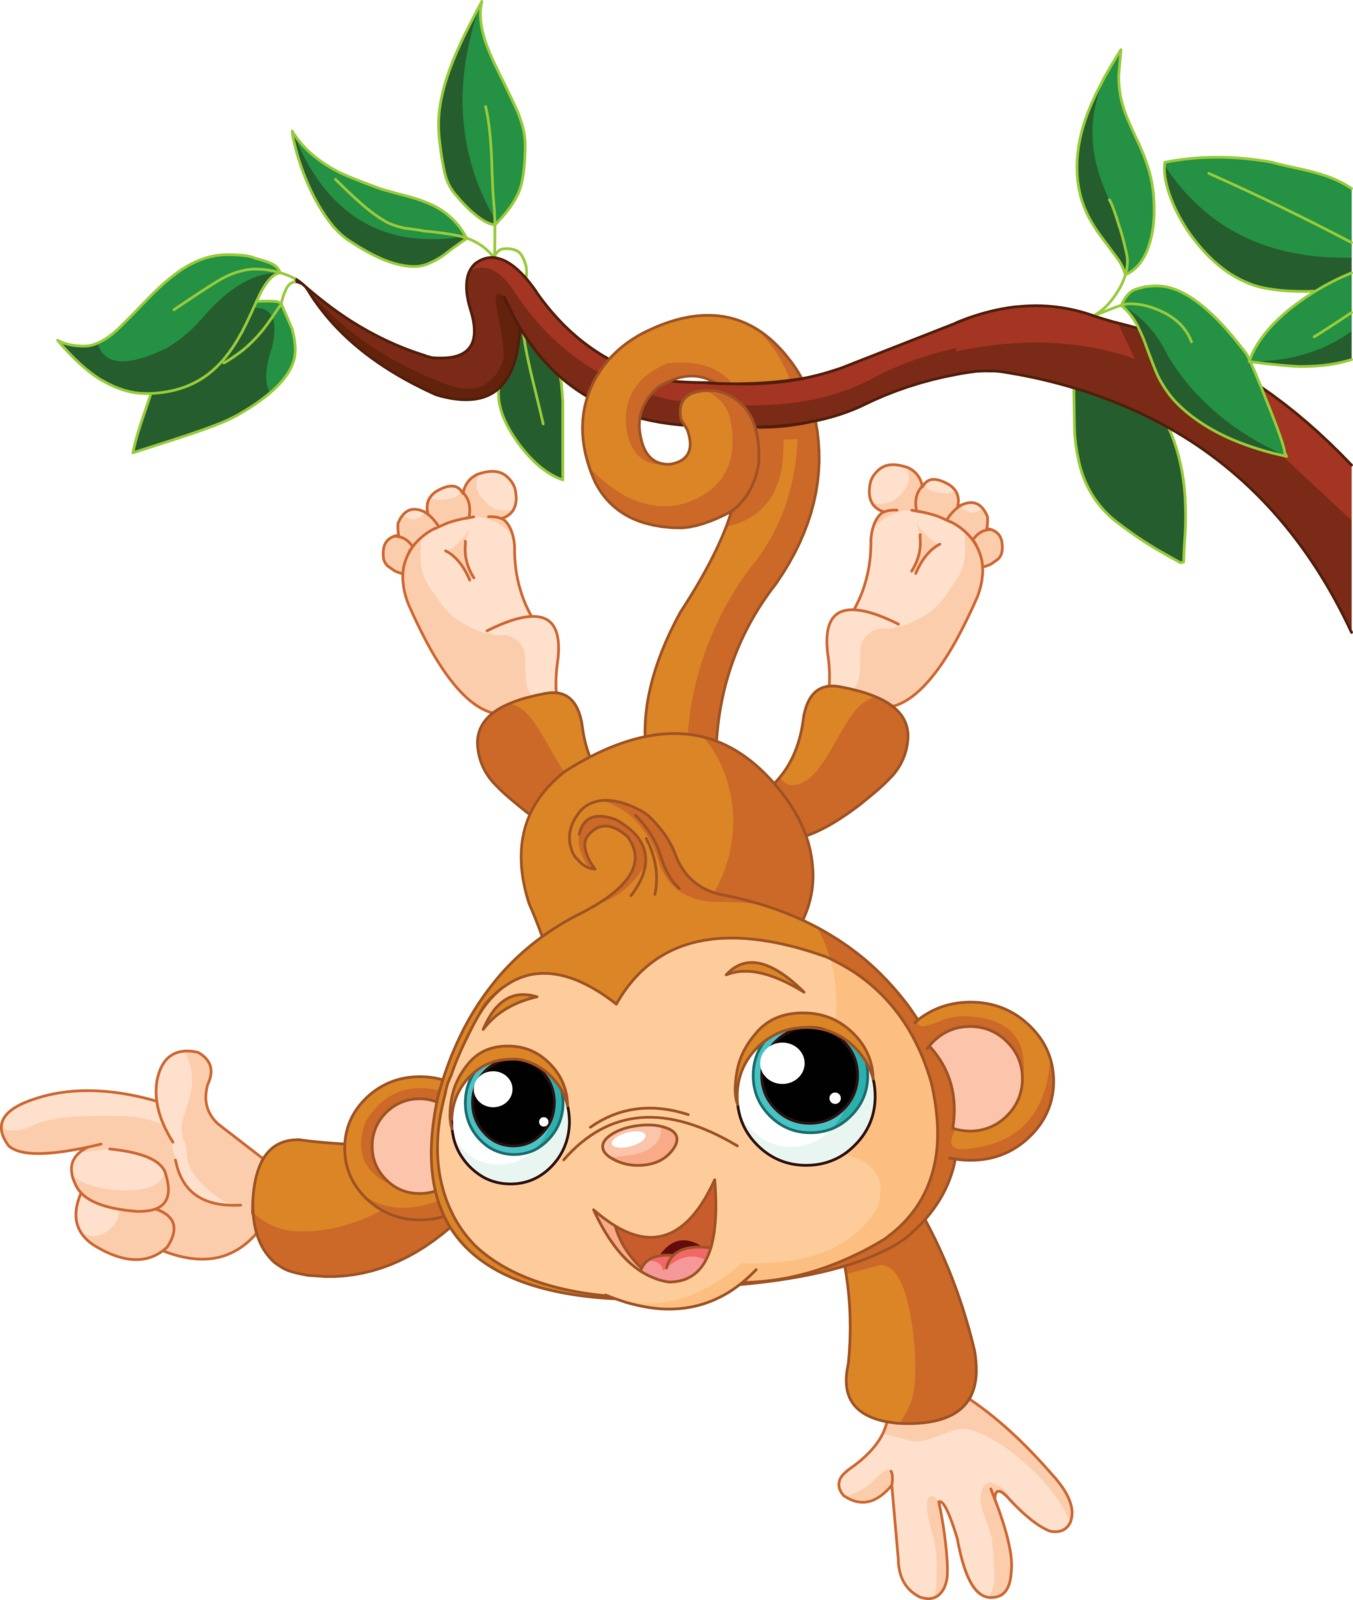 Baby monkey on a tree by Dazdraperma